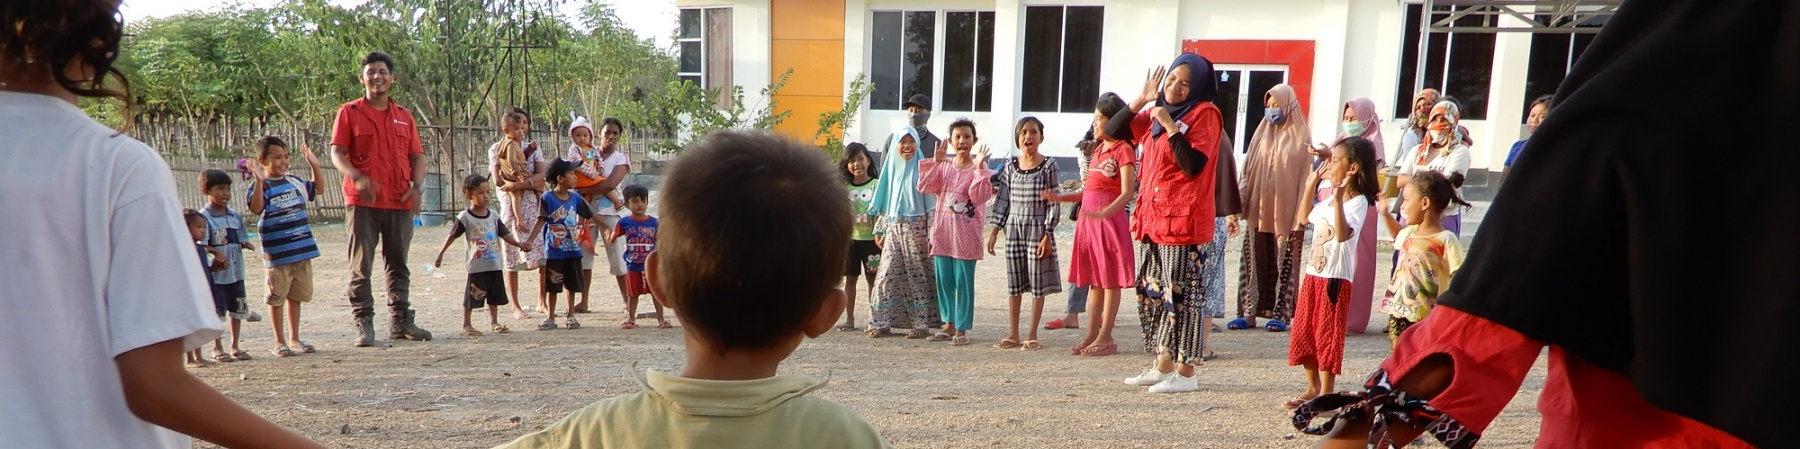 Bambini dispersi in Indonesia